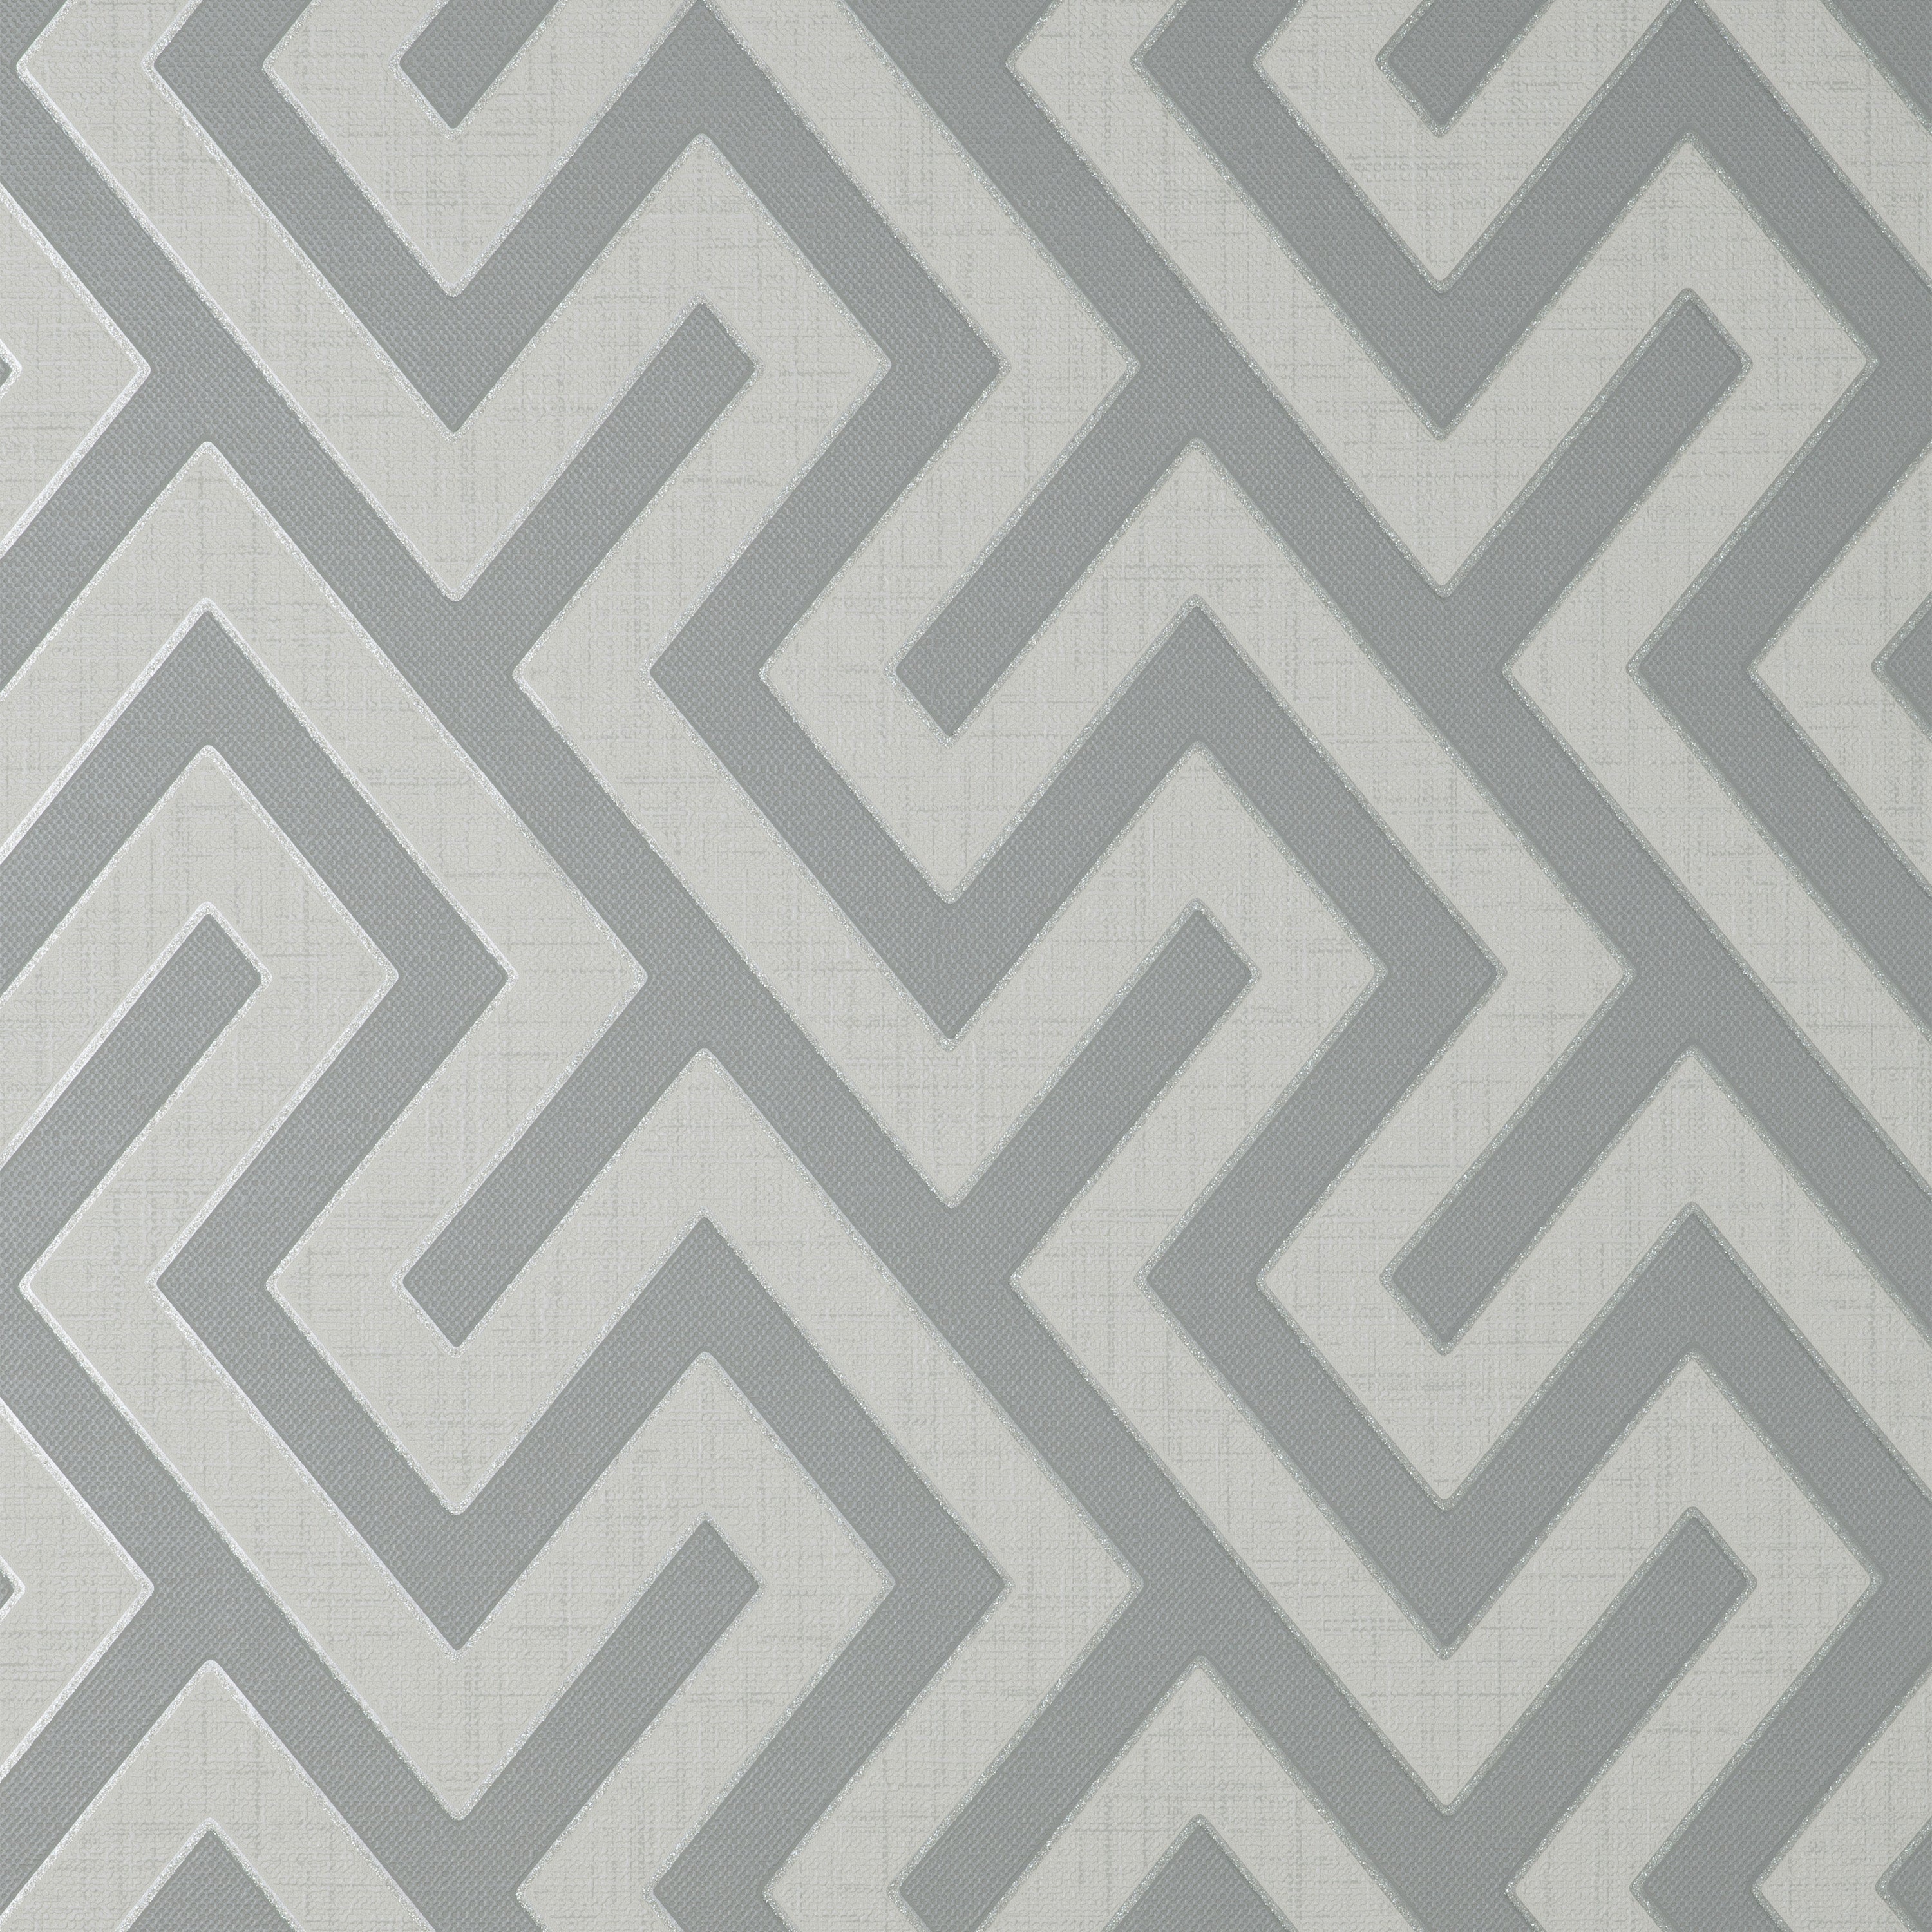 Larson Geometric Grey and Silver Wallpaper | Fine Decor | FD43071